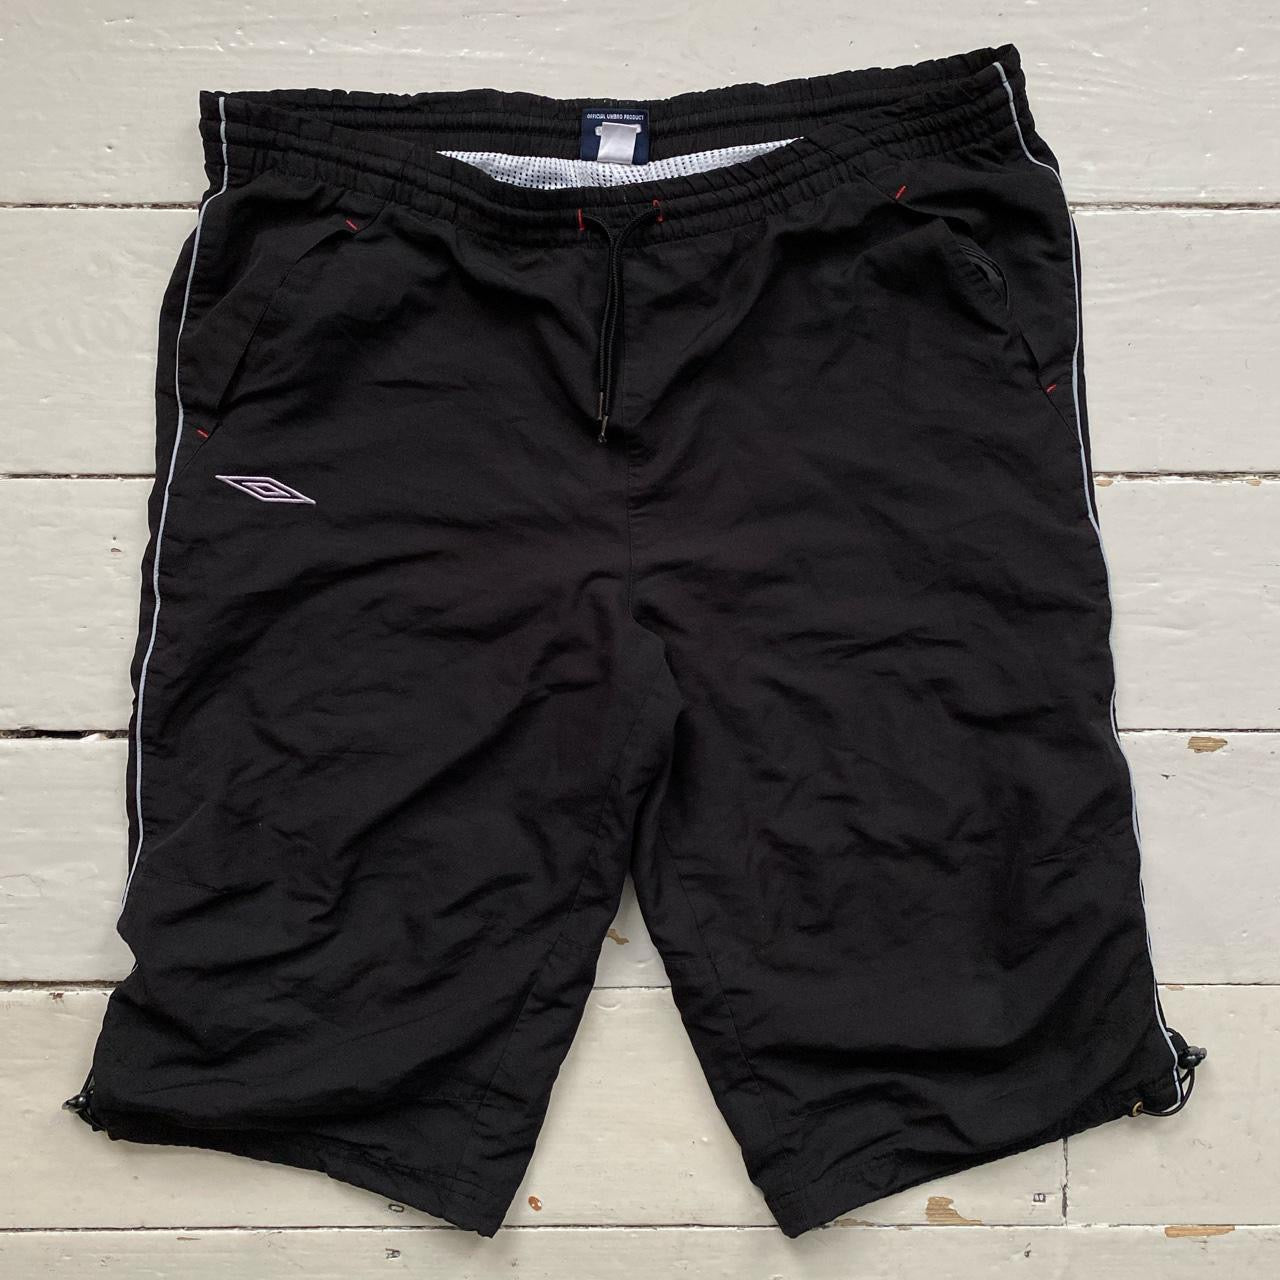 Umbro Black Spellout Shell Shorts (Medium)